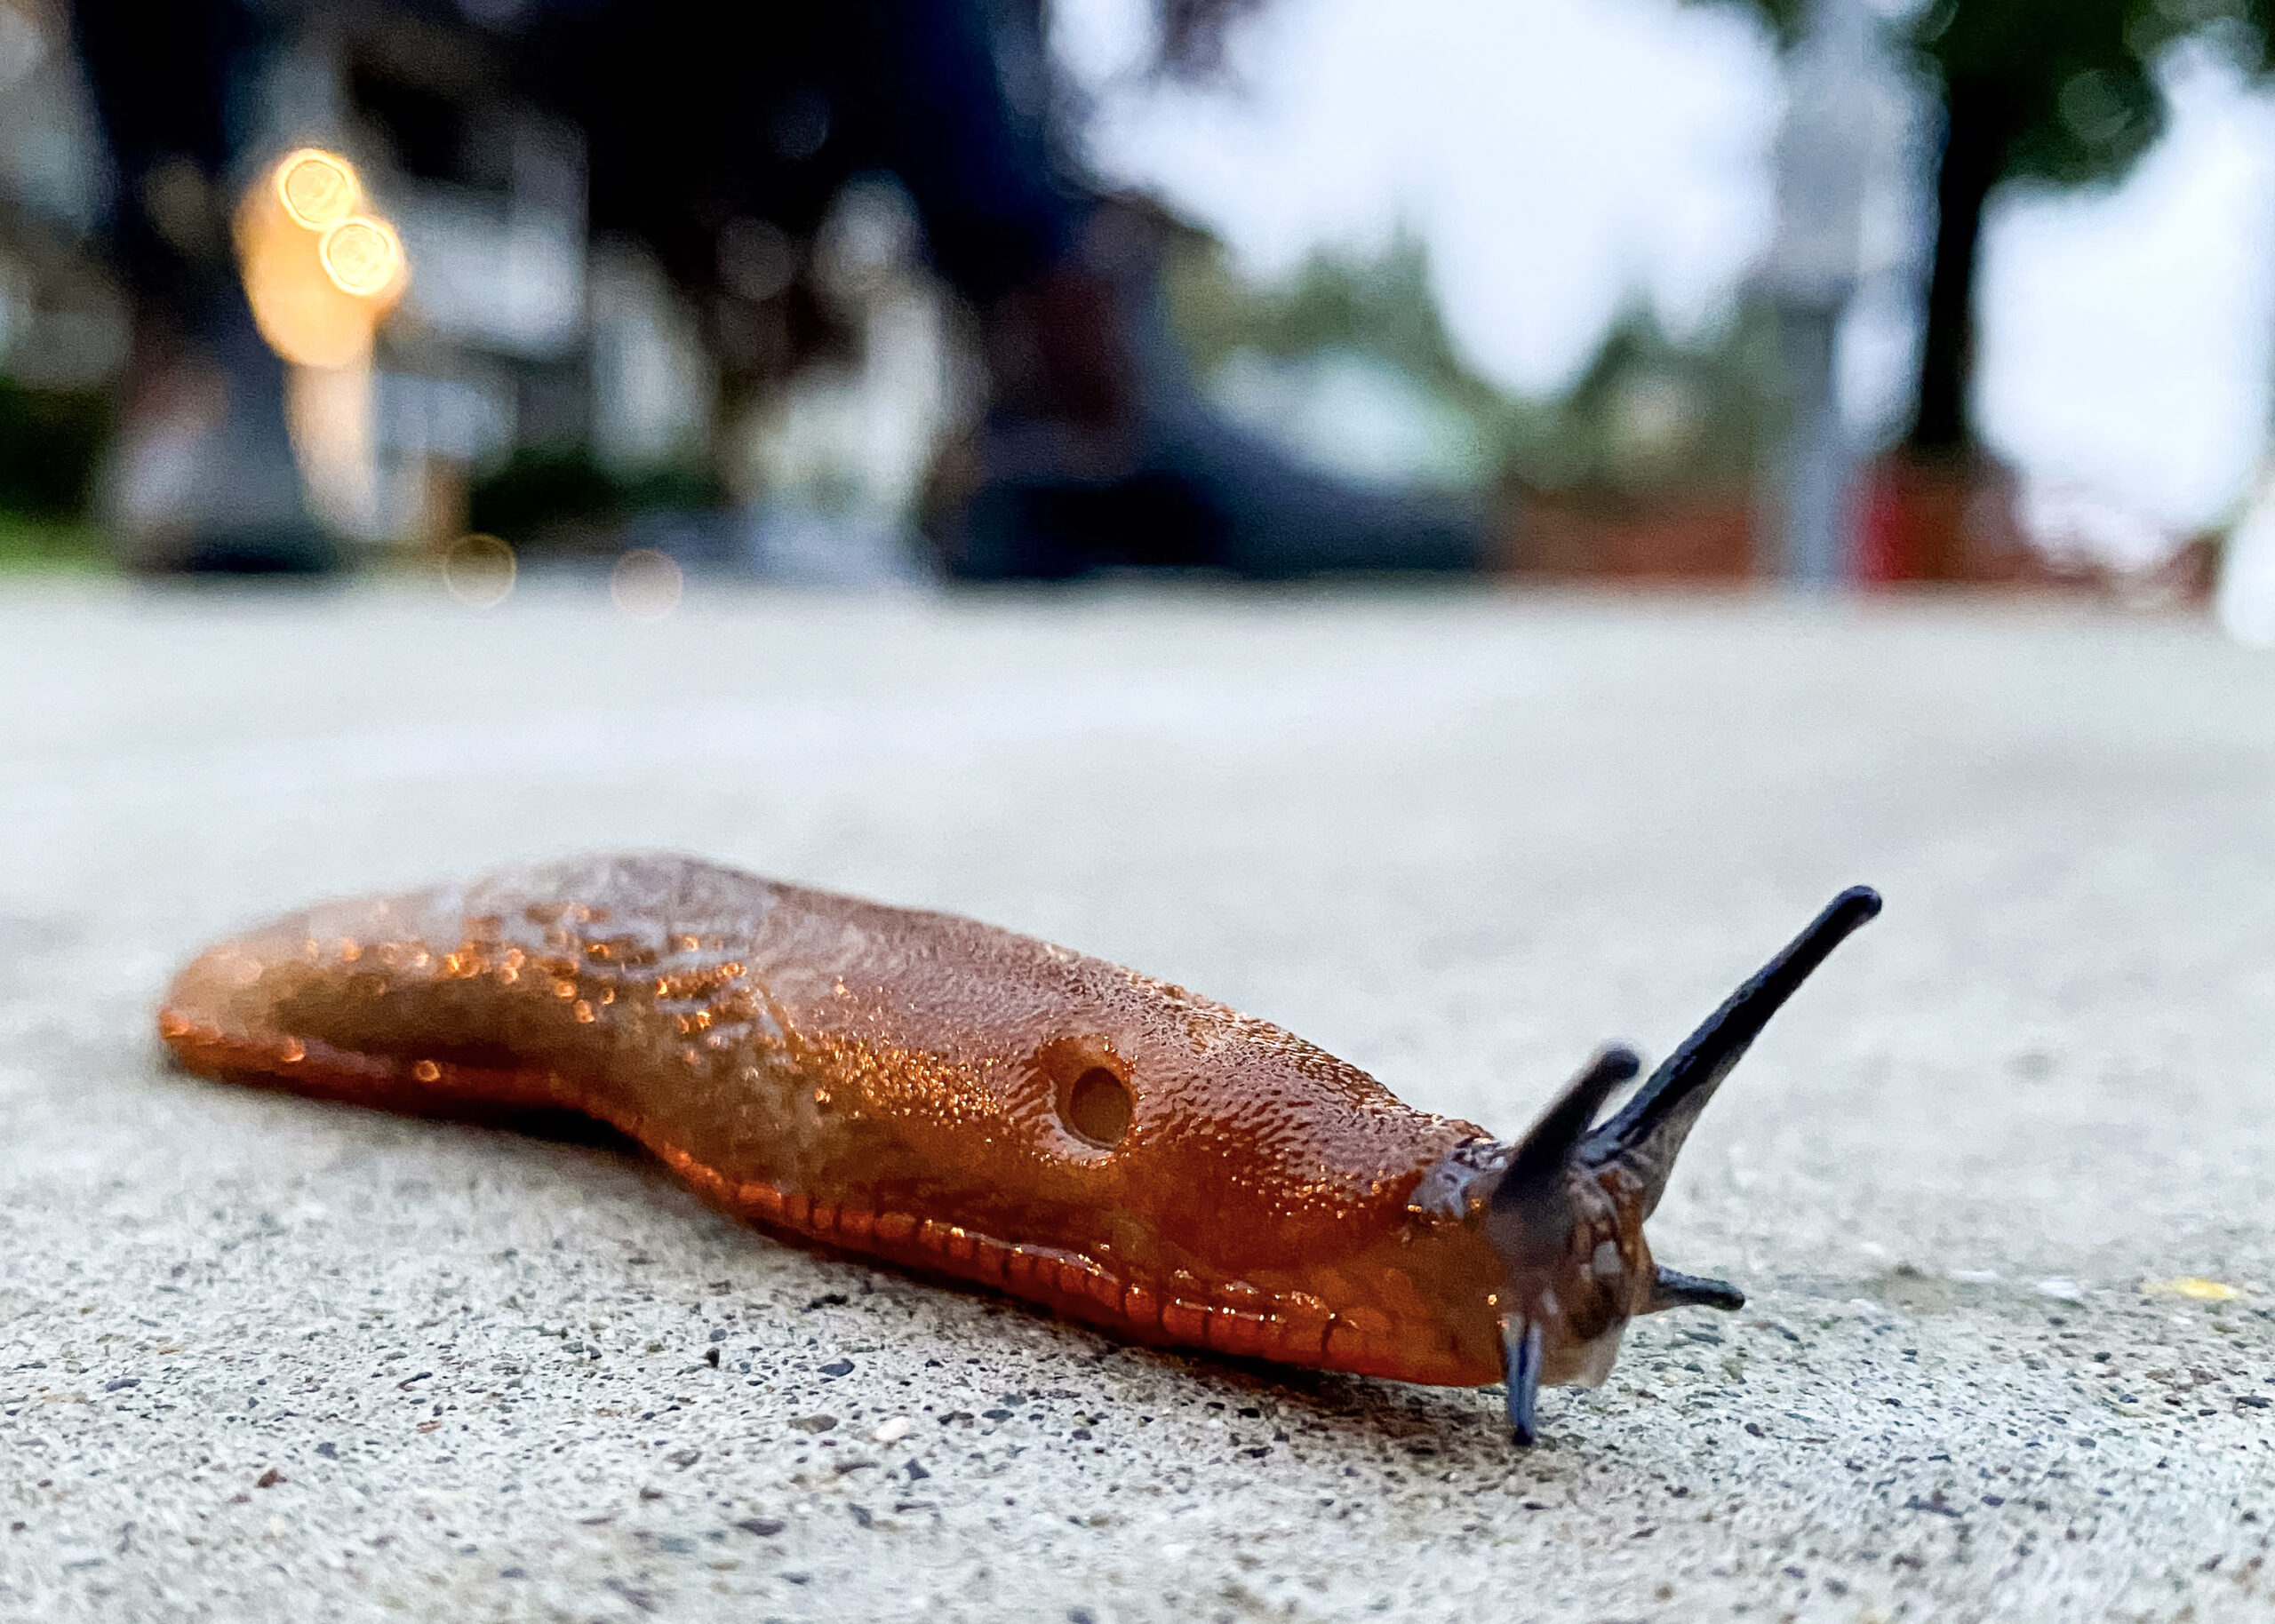 a brown slug on sidewalk